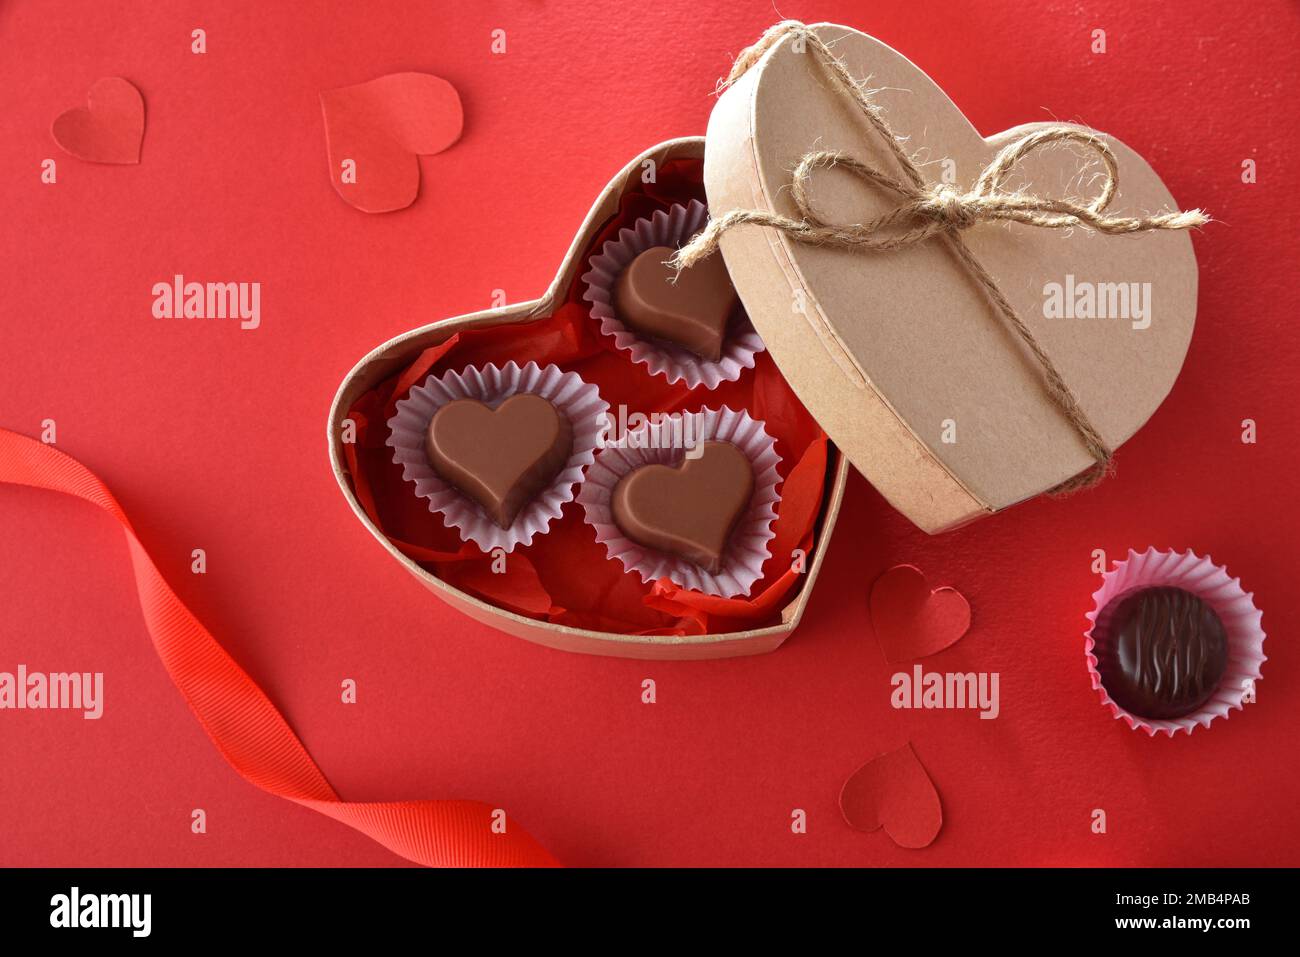 https://c8.alamy.com/compit/2mb4pab/scatola-regalo-di-cioccolatini-di-san-valentino-su-un-tavolo-rosso-decorato-con-nastri-e-cuori-vista-dall-alto-2mb4pab.jpg